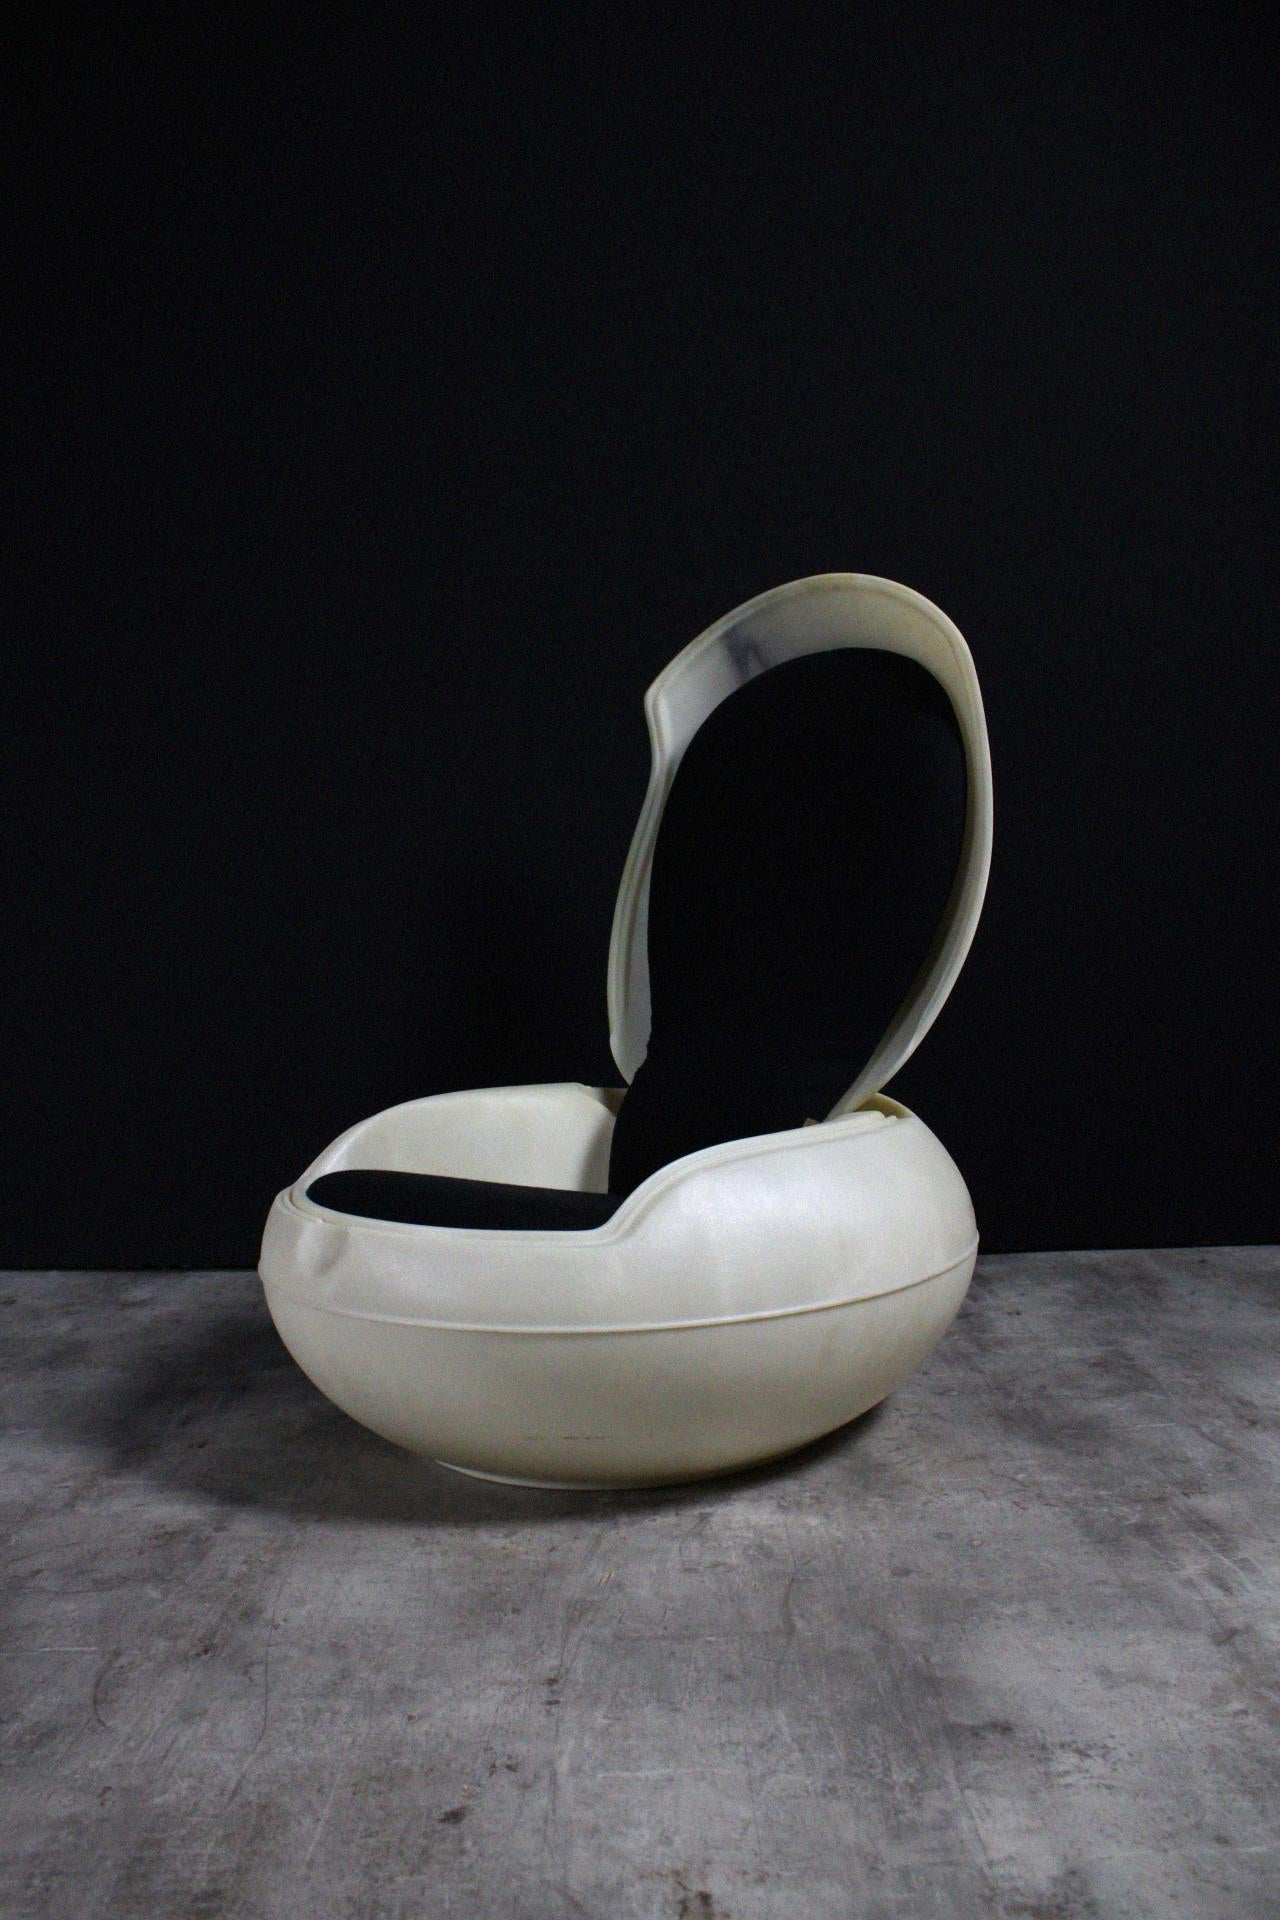 La Garden Egg Chair est l'une des pièces les plus connues de Peter GhycZY. Il s'agit d'une véritable icône de l'ère spatiale que beaucoup connaissent. Peter Ghyczy a conçu et produit la chaise Egg en 1968, dont ces modèles signés des années 90